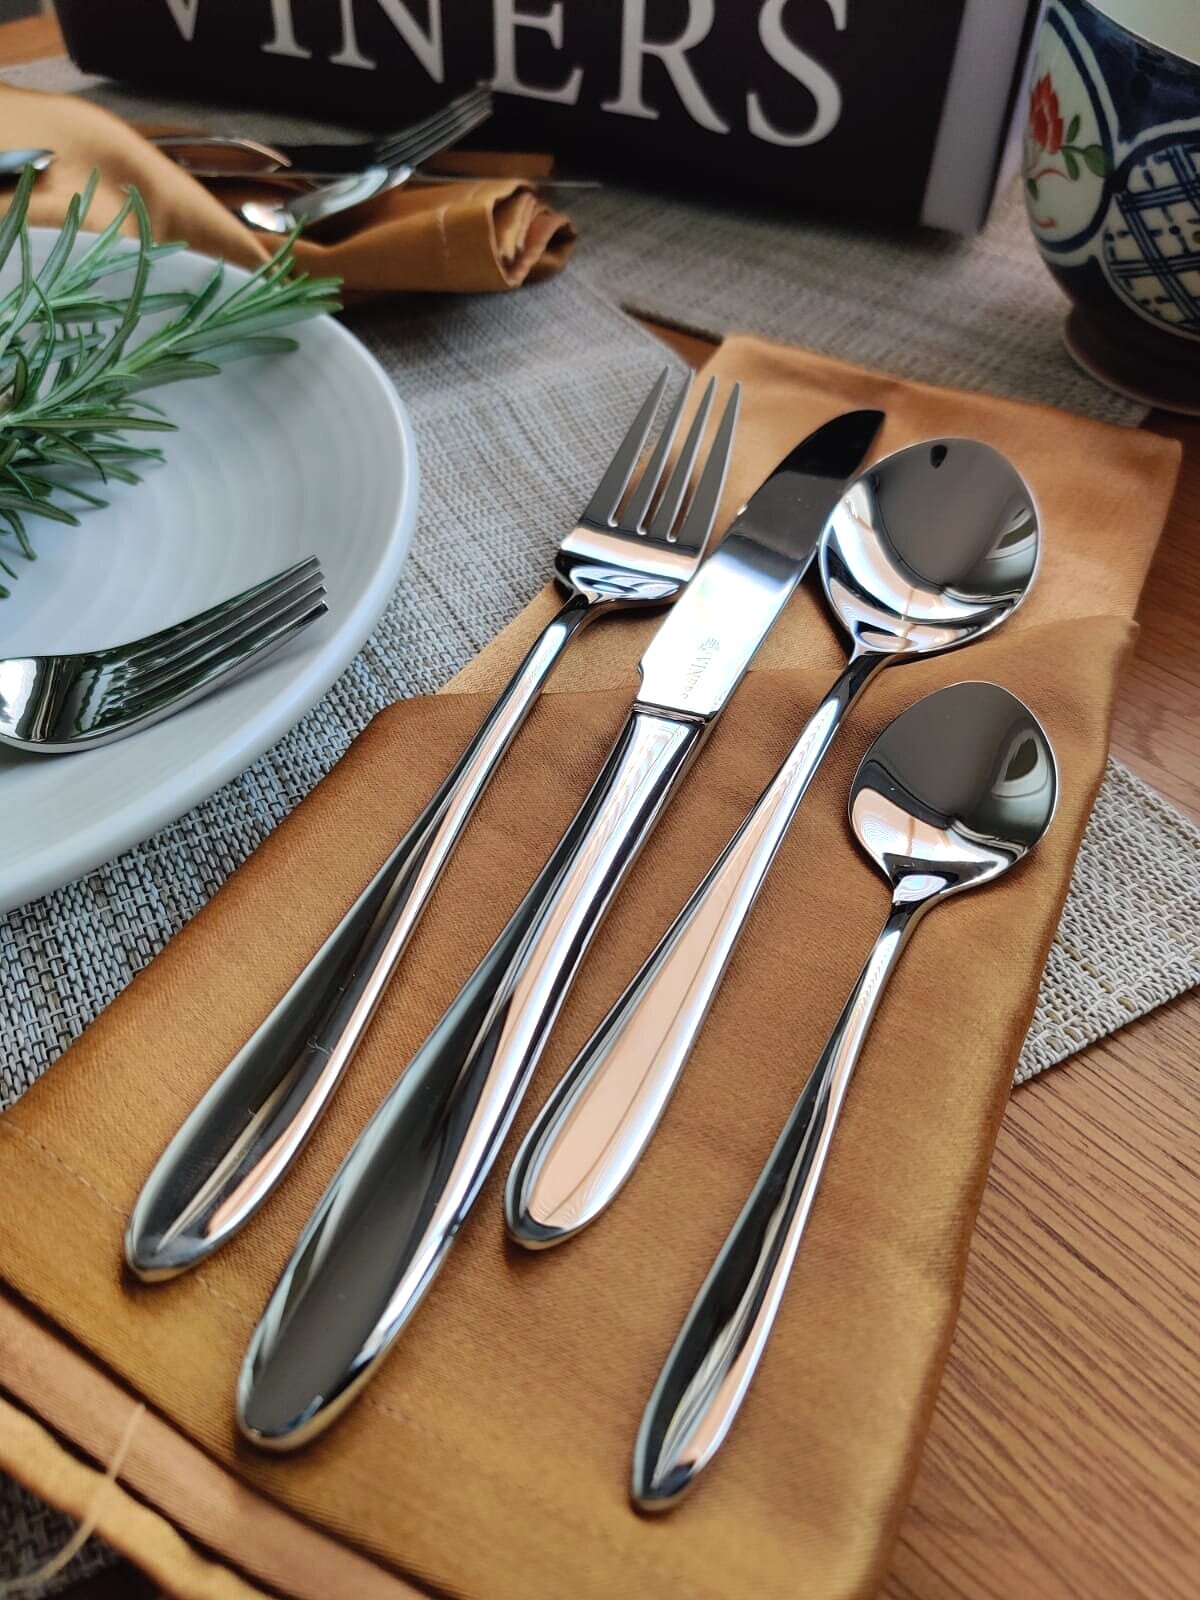 Viners cutlery 